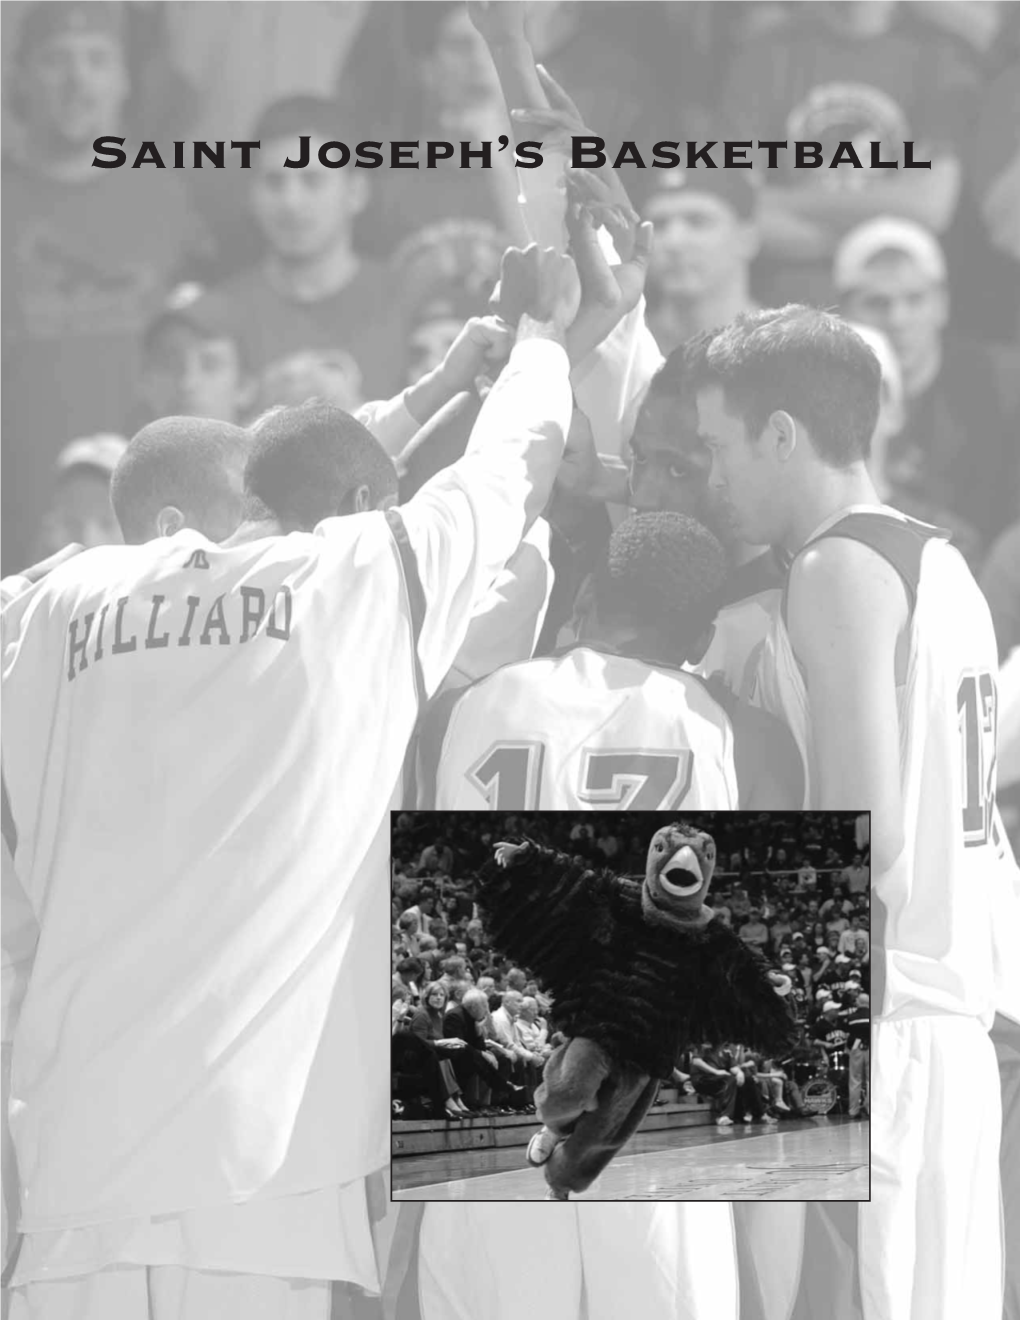 Saint Joseph's Basketball Hall of Fame